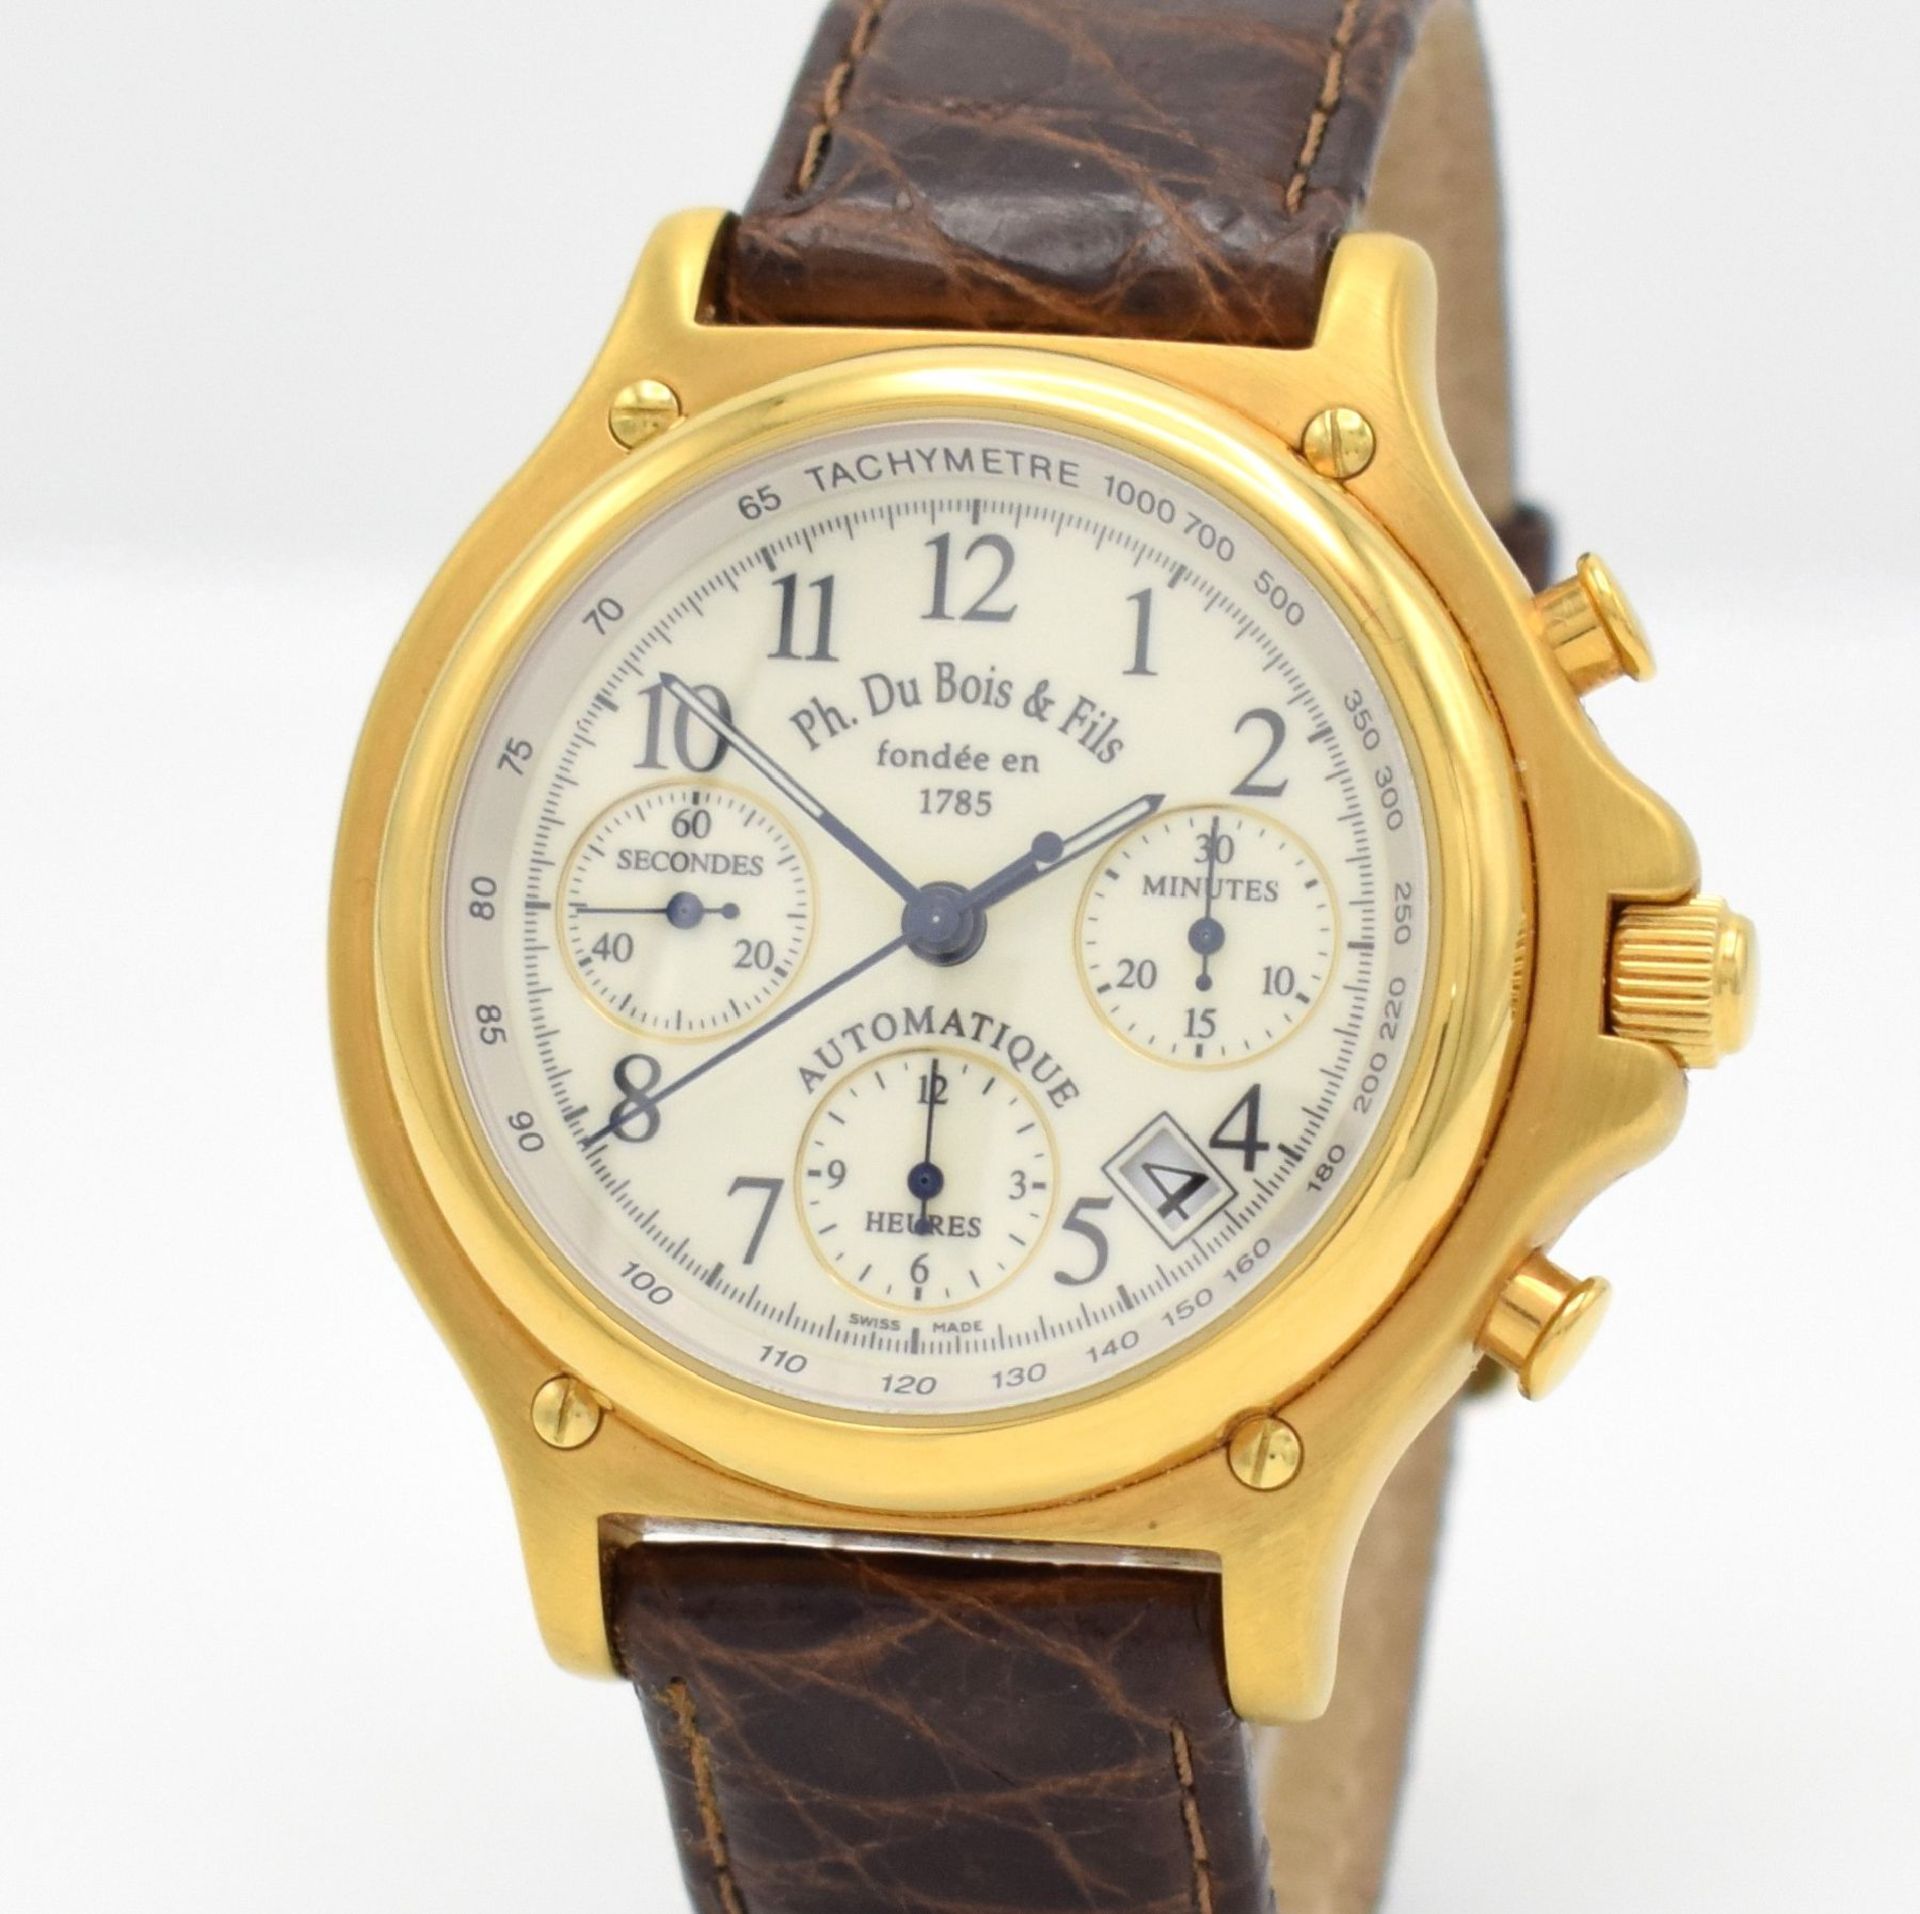 DU BOIS Regular 1 gents chronograph, Switzerland around 2000, self winding, gold plated case, - Bild 4 aus 7